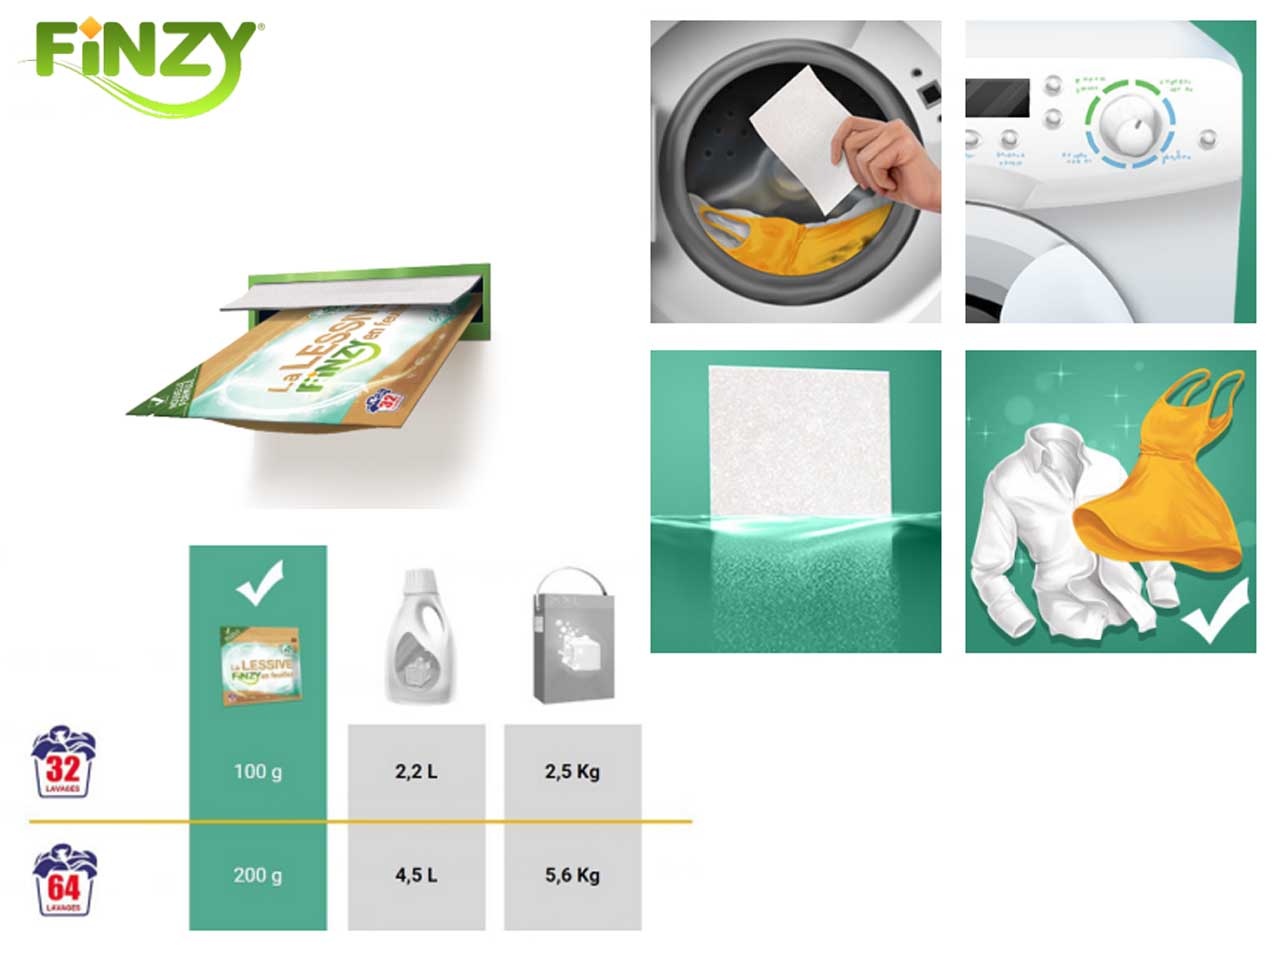 Pochette de lessive en feuilles Finzy - l'alternative lessive bio et compact